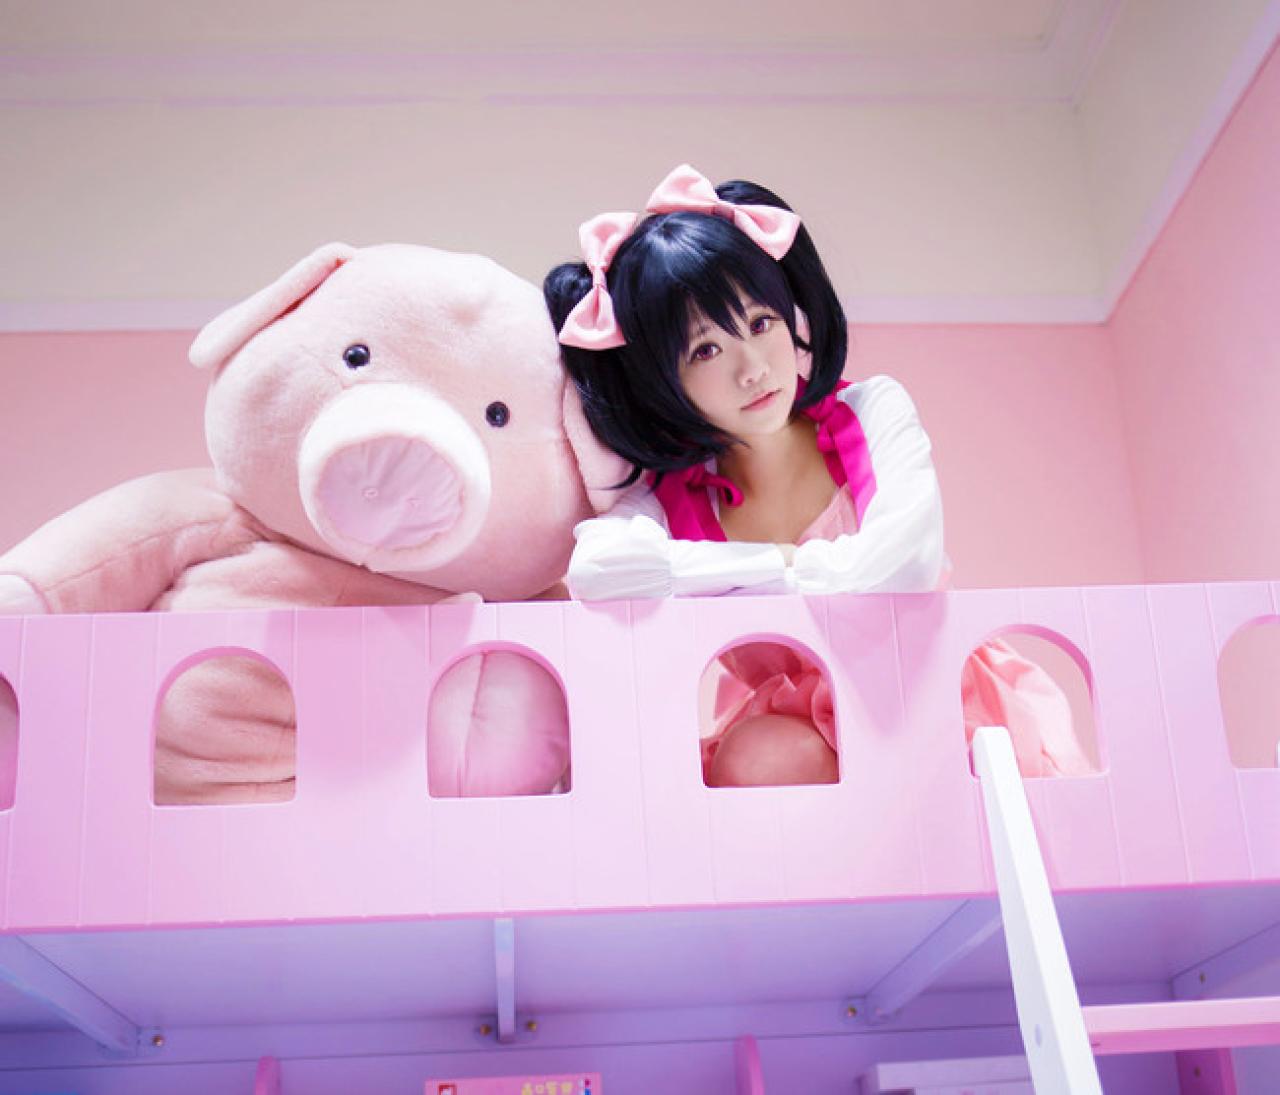 宝bA0_扮演矢泽妮可在上铺和小猪玩偶肩并肩靠在一起